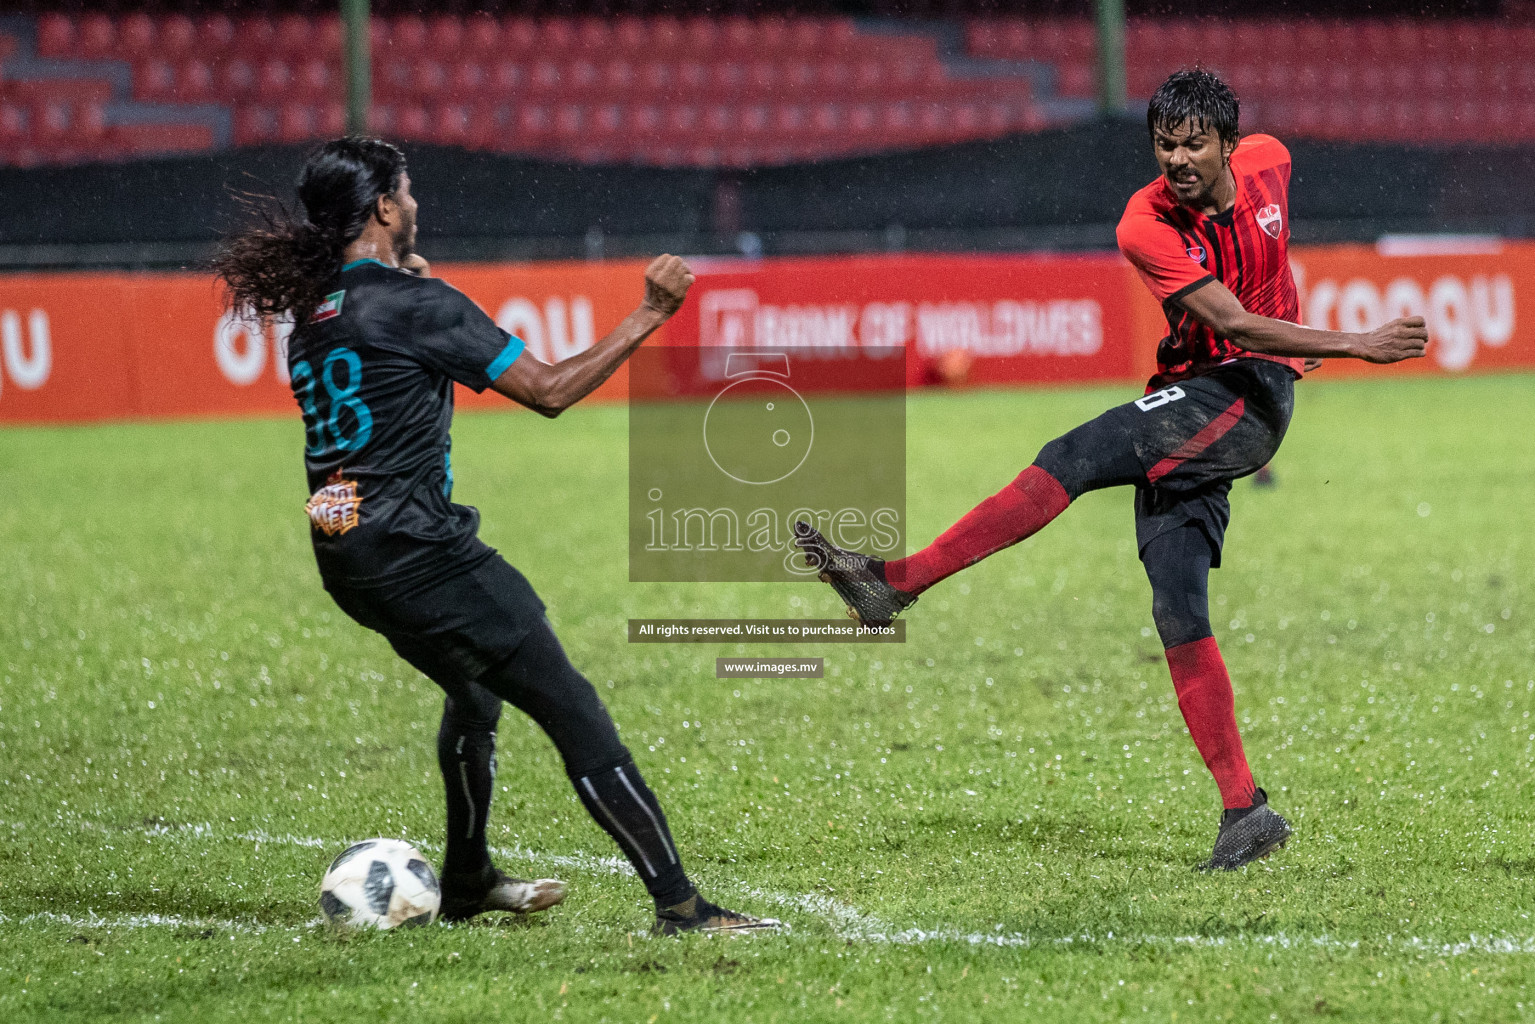 TC Sports Club vs Foakaidhoo FC in Dhiraagu Dhivehi Premier League 2019, in Male' Maldives on 23rd Sep 2019. Photos:Suadh Abdul Sattar / images.mv